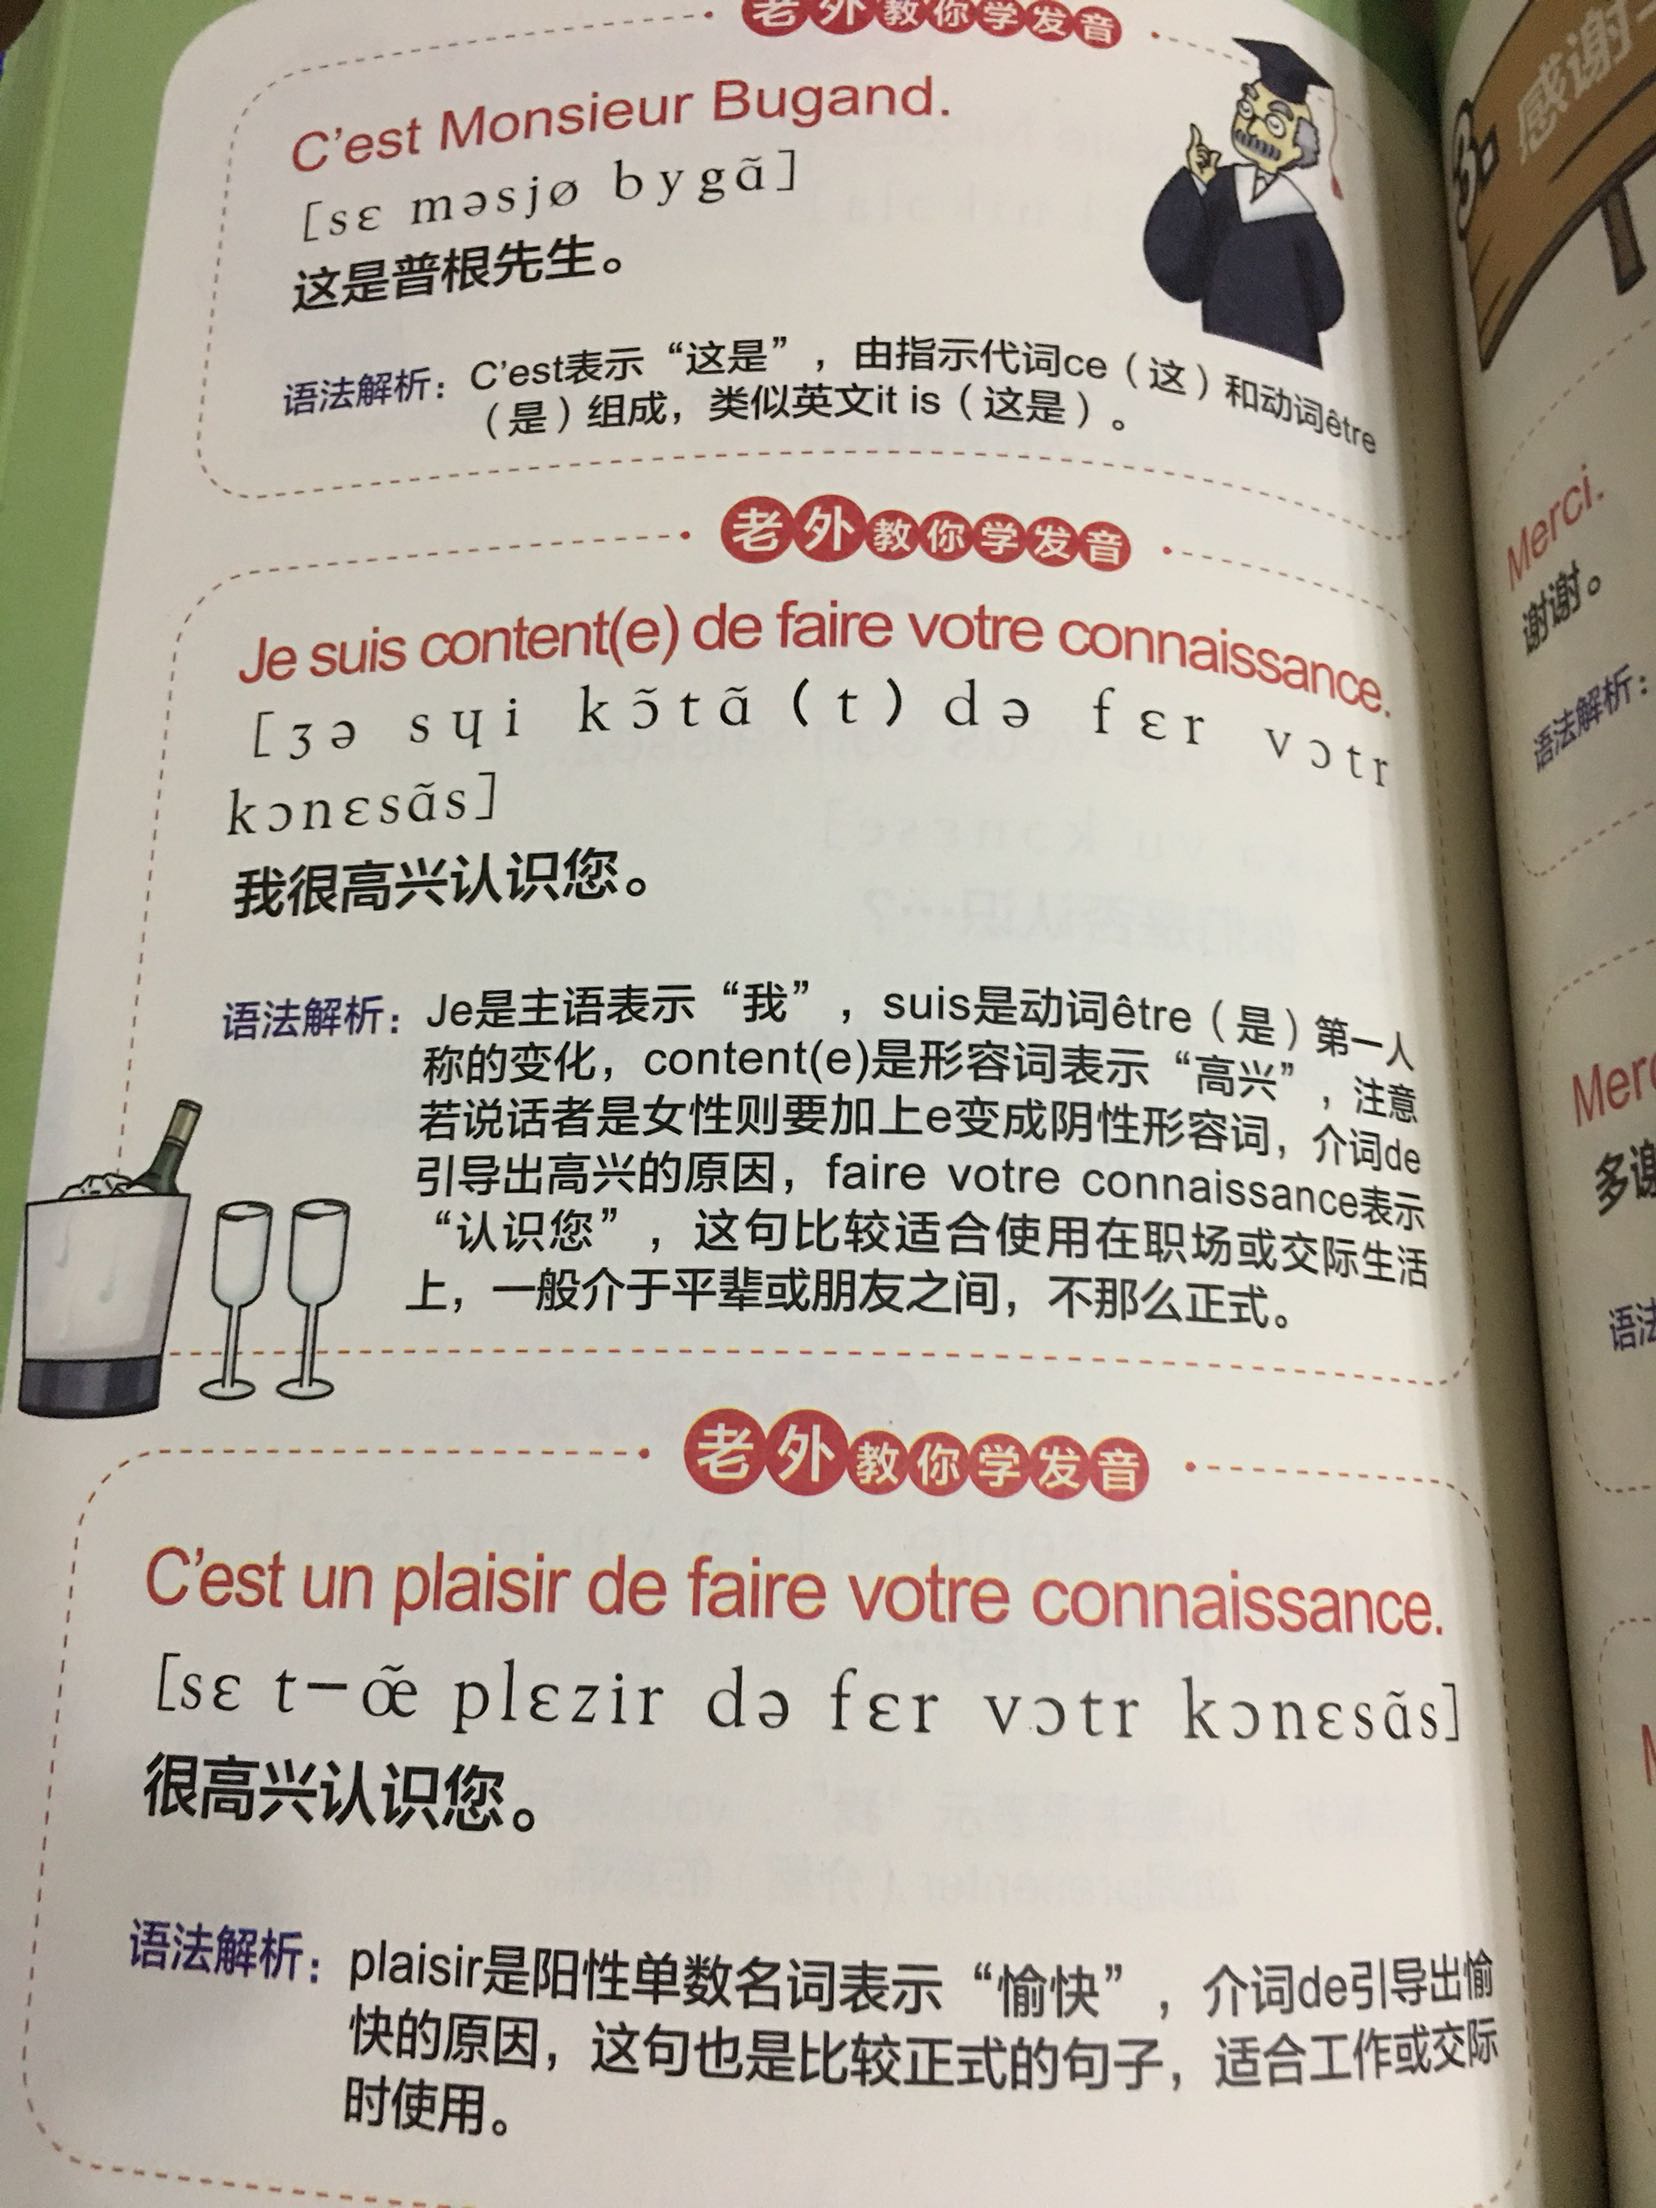 说是最适合中国人的法语学习书，能让人轻松开口说法语，试目以待吧！